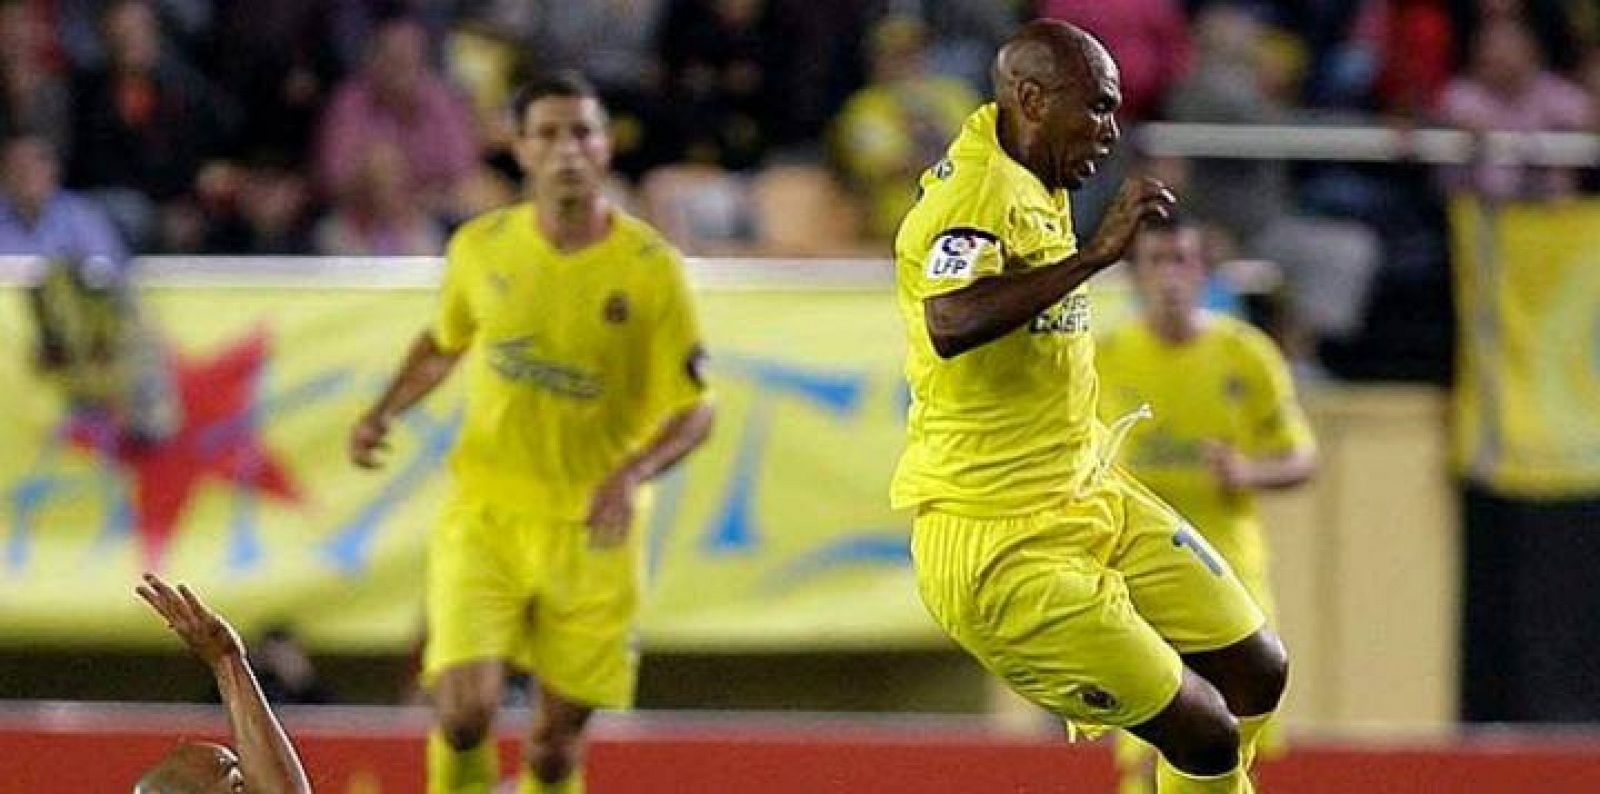 Marcos senna, centrocampista del Villarreal, ha criticado a los árbitros de la Liga.